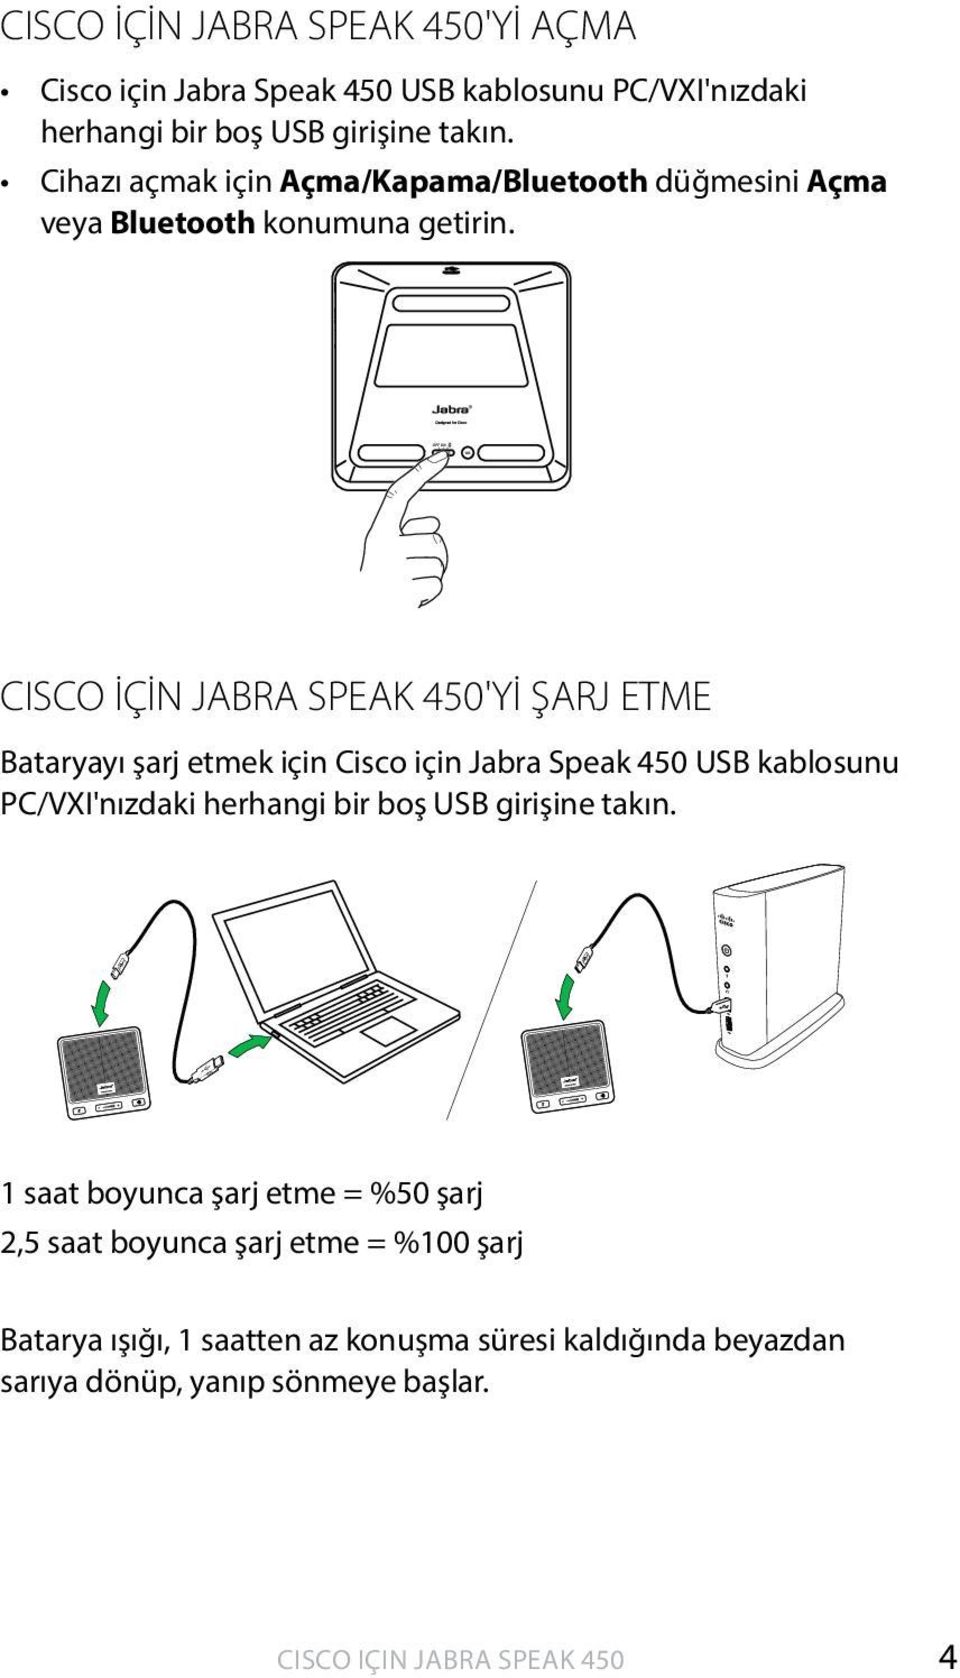 CISCO İÇİN JABRA SPEAK 450'Yİ ŞARJ ETME Bataryayı şarj etmek için Cisco için Jabra Speak 450 USB kablosunu PC/VXI'nızdaki herhangi bir